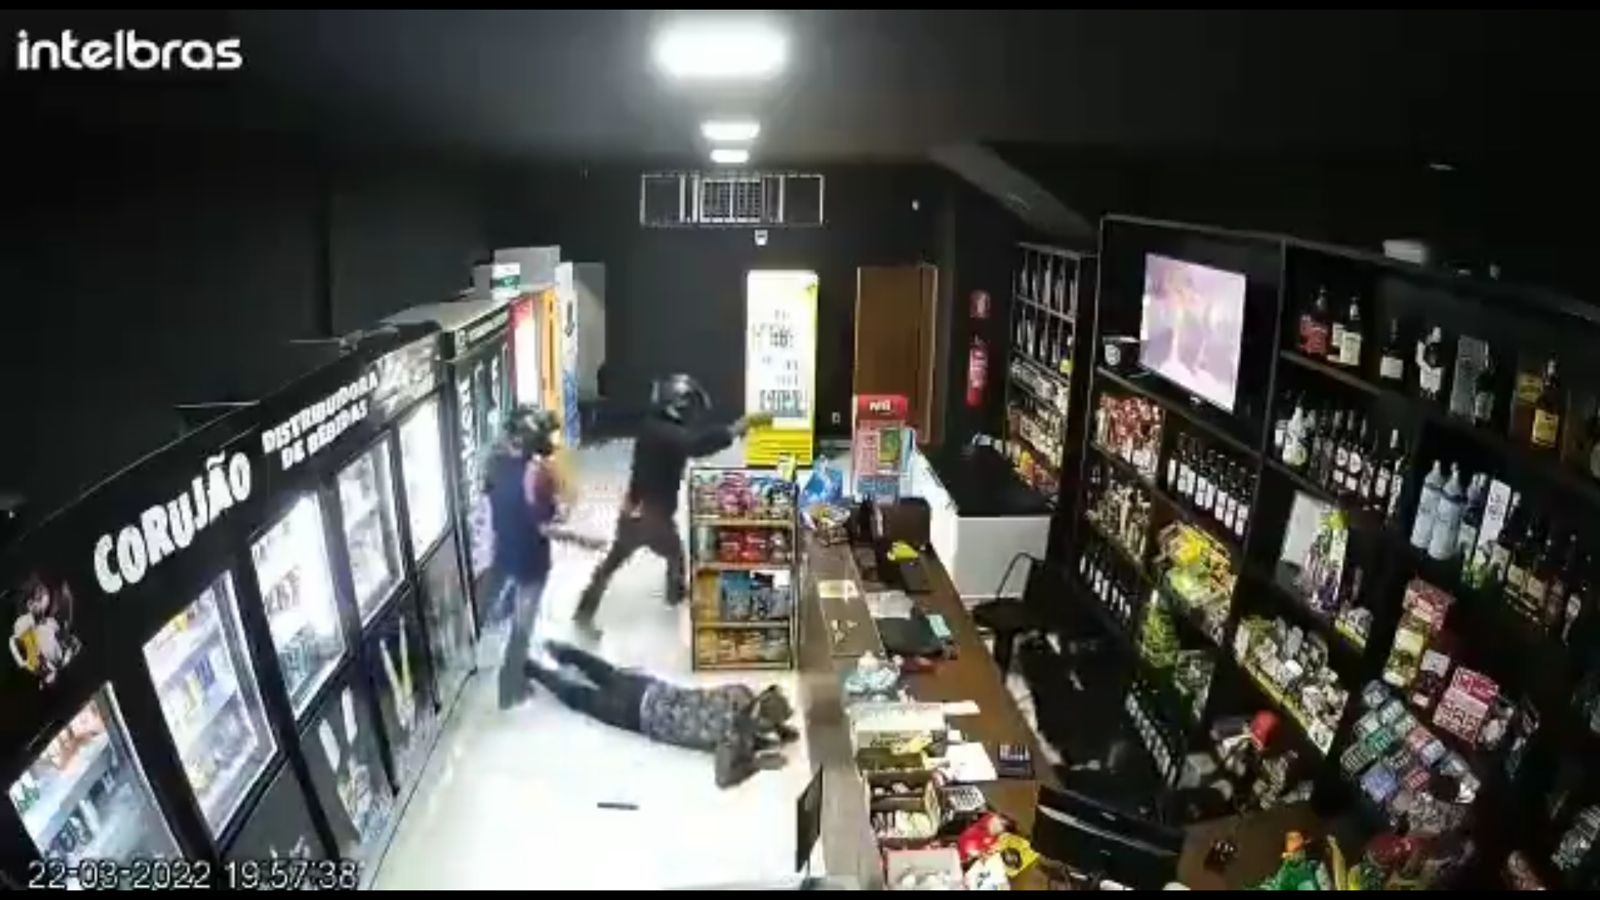 Criminosos armados invadem distribuidora de bebidas e rendem funcionários em Palmas. (Foto: divulgação)